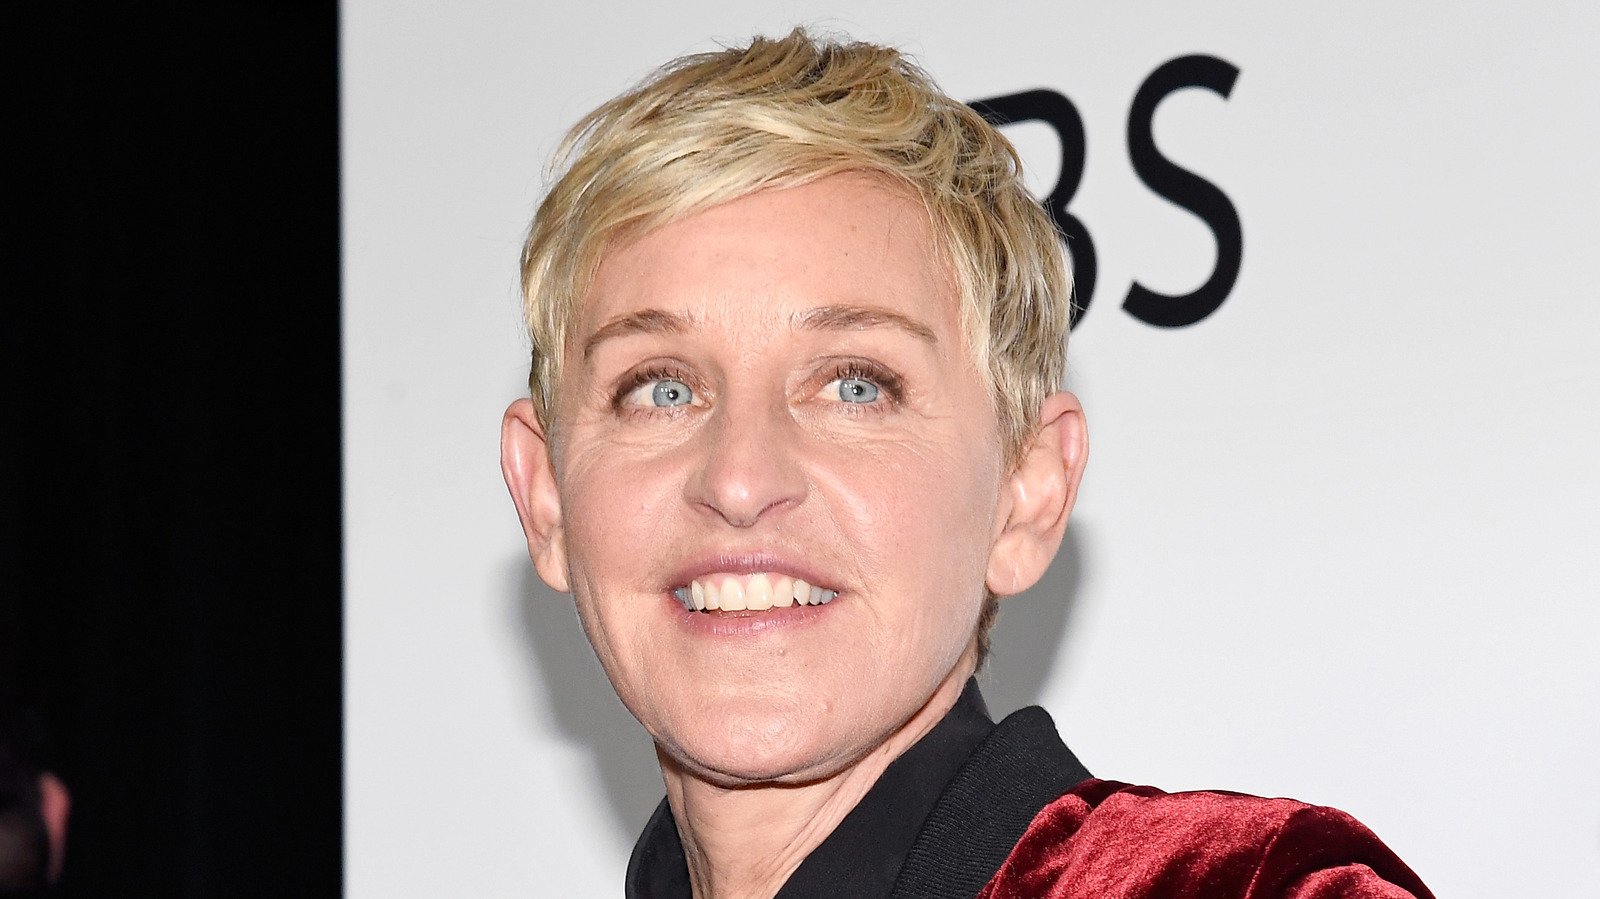 Scandalous Things About Ellen DeGeneres' Personal Life